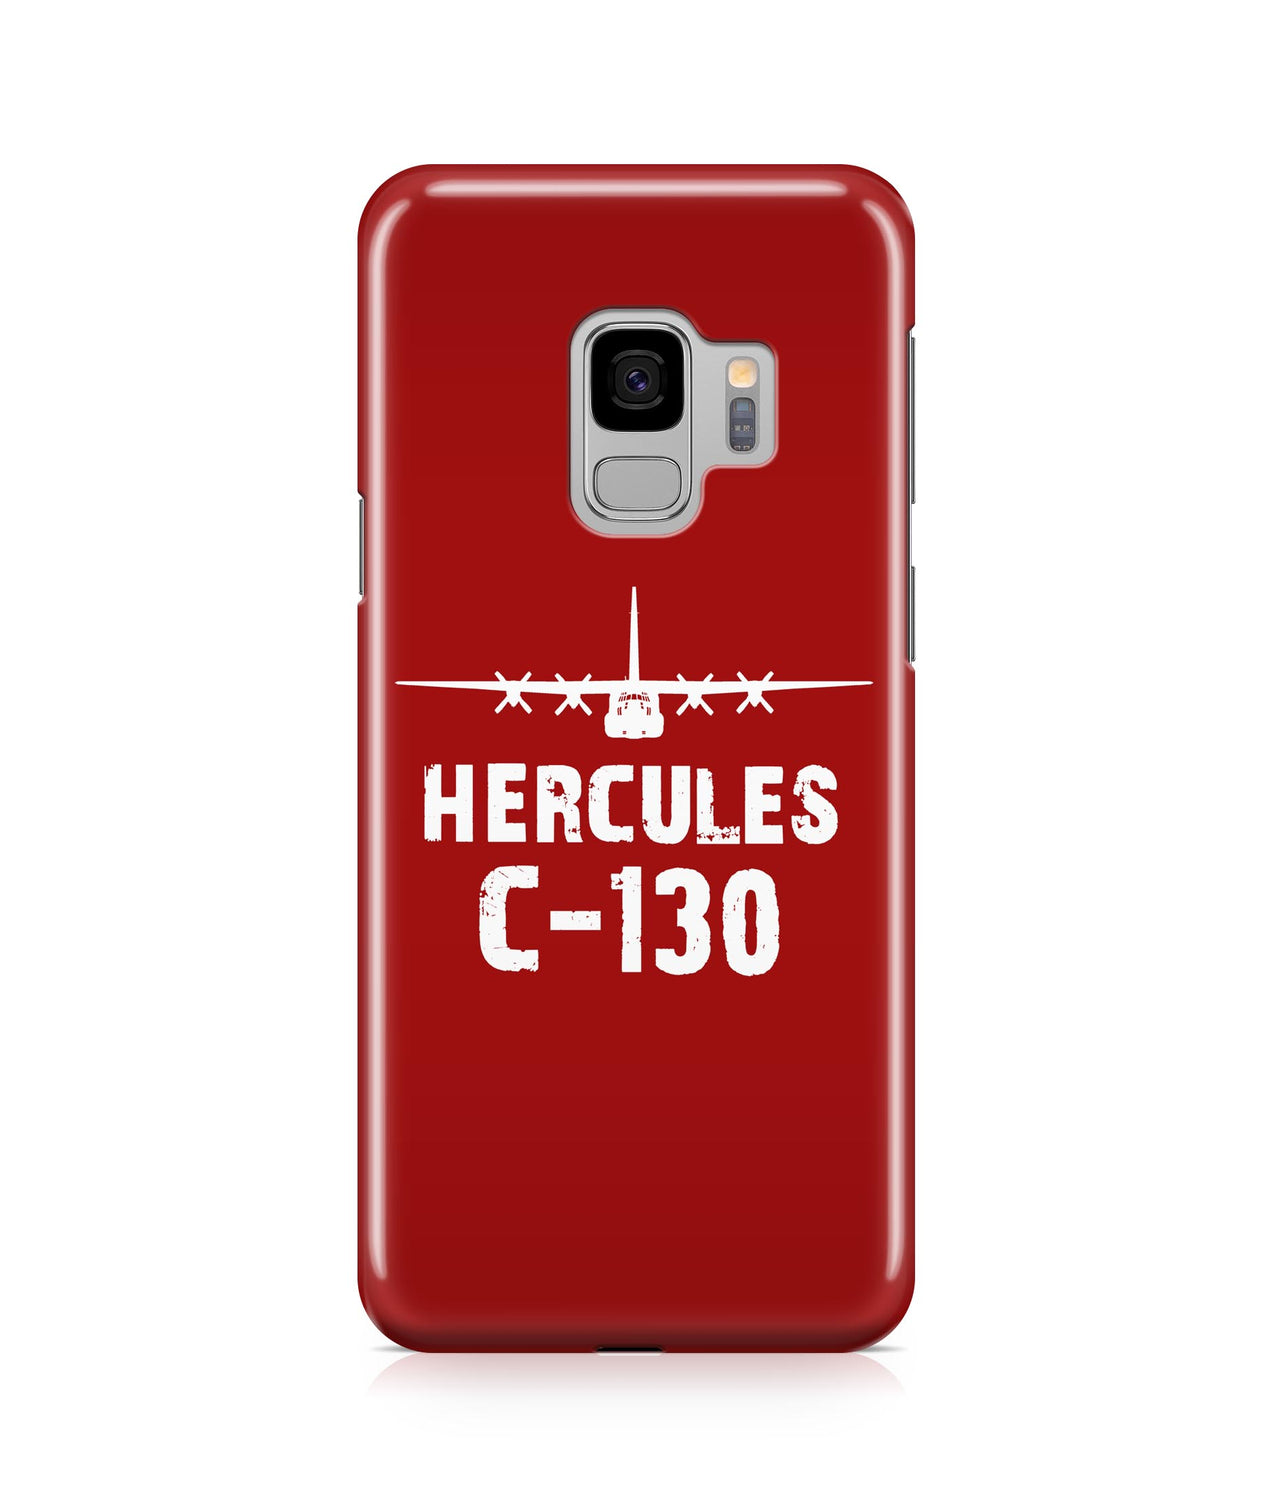 Hercules C-130 Plane & Designed Samsung J Cases